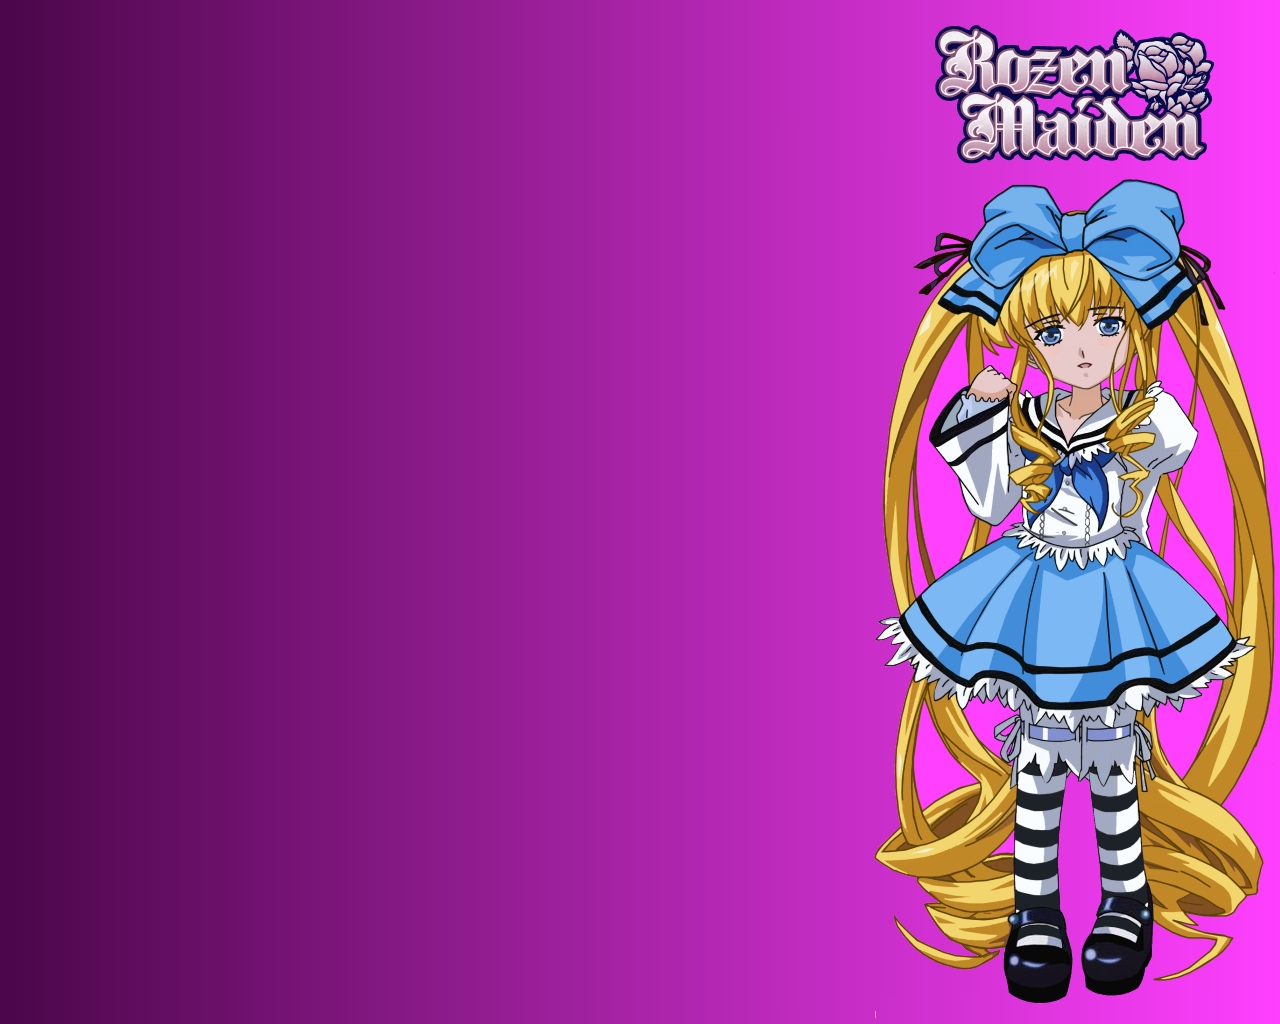 Descarga gratuita de fondo de pantalla para móvil de Animado, Rozen Maiden.